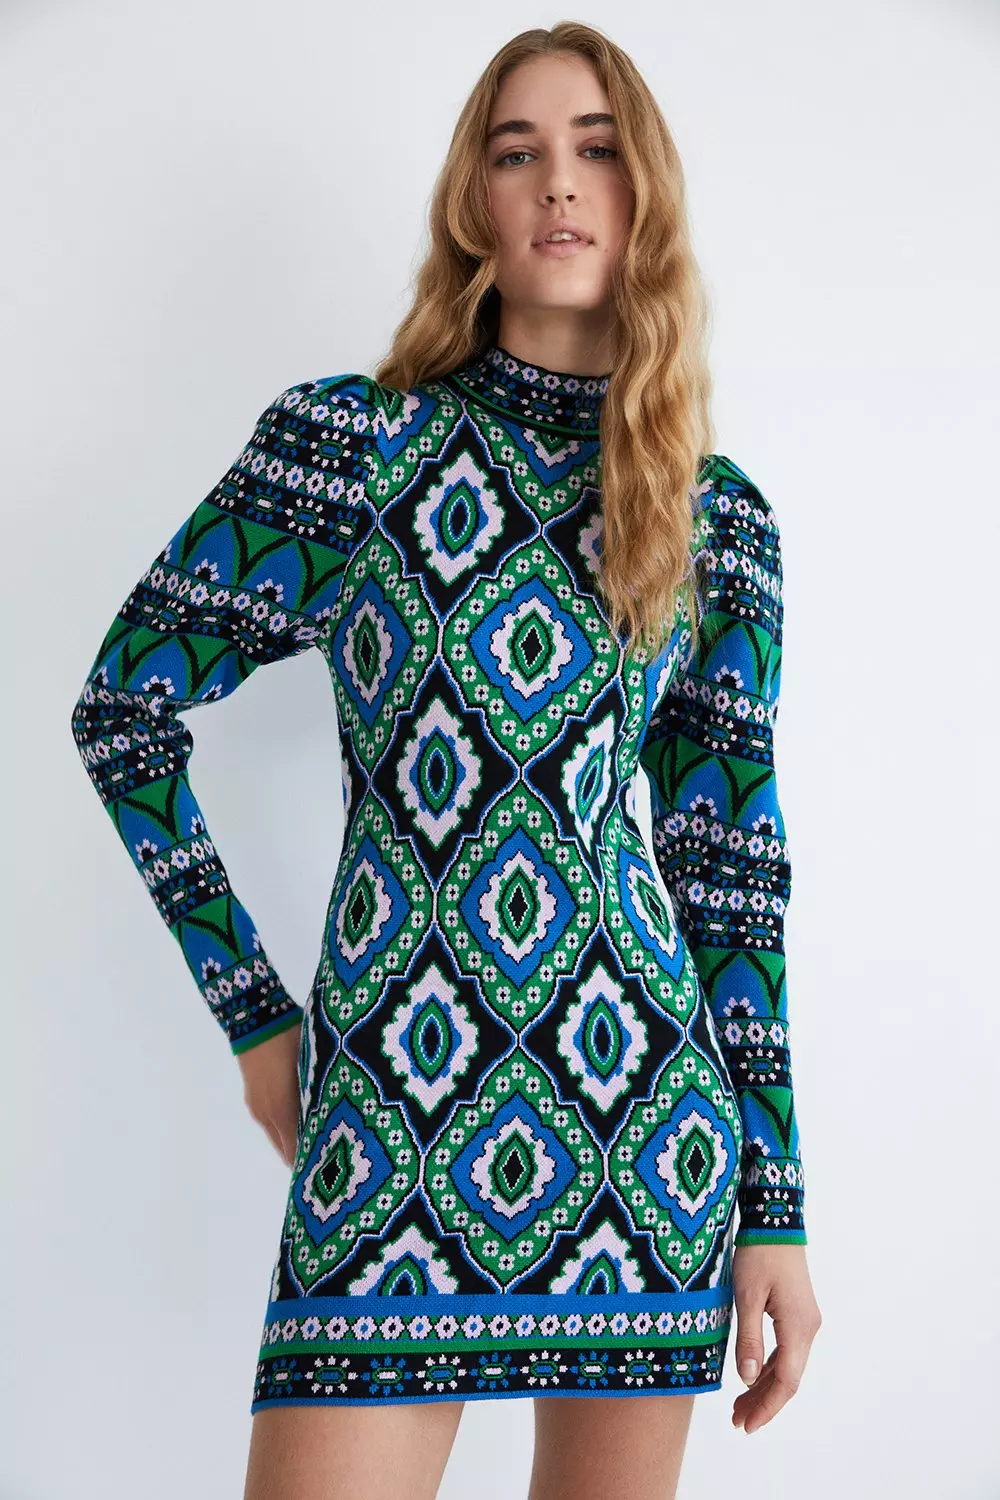 Tile Border Jacquard Knit Dress | Warehouse